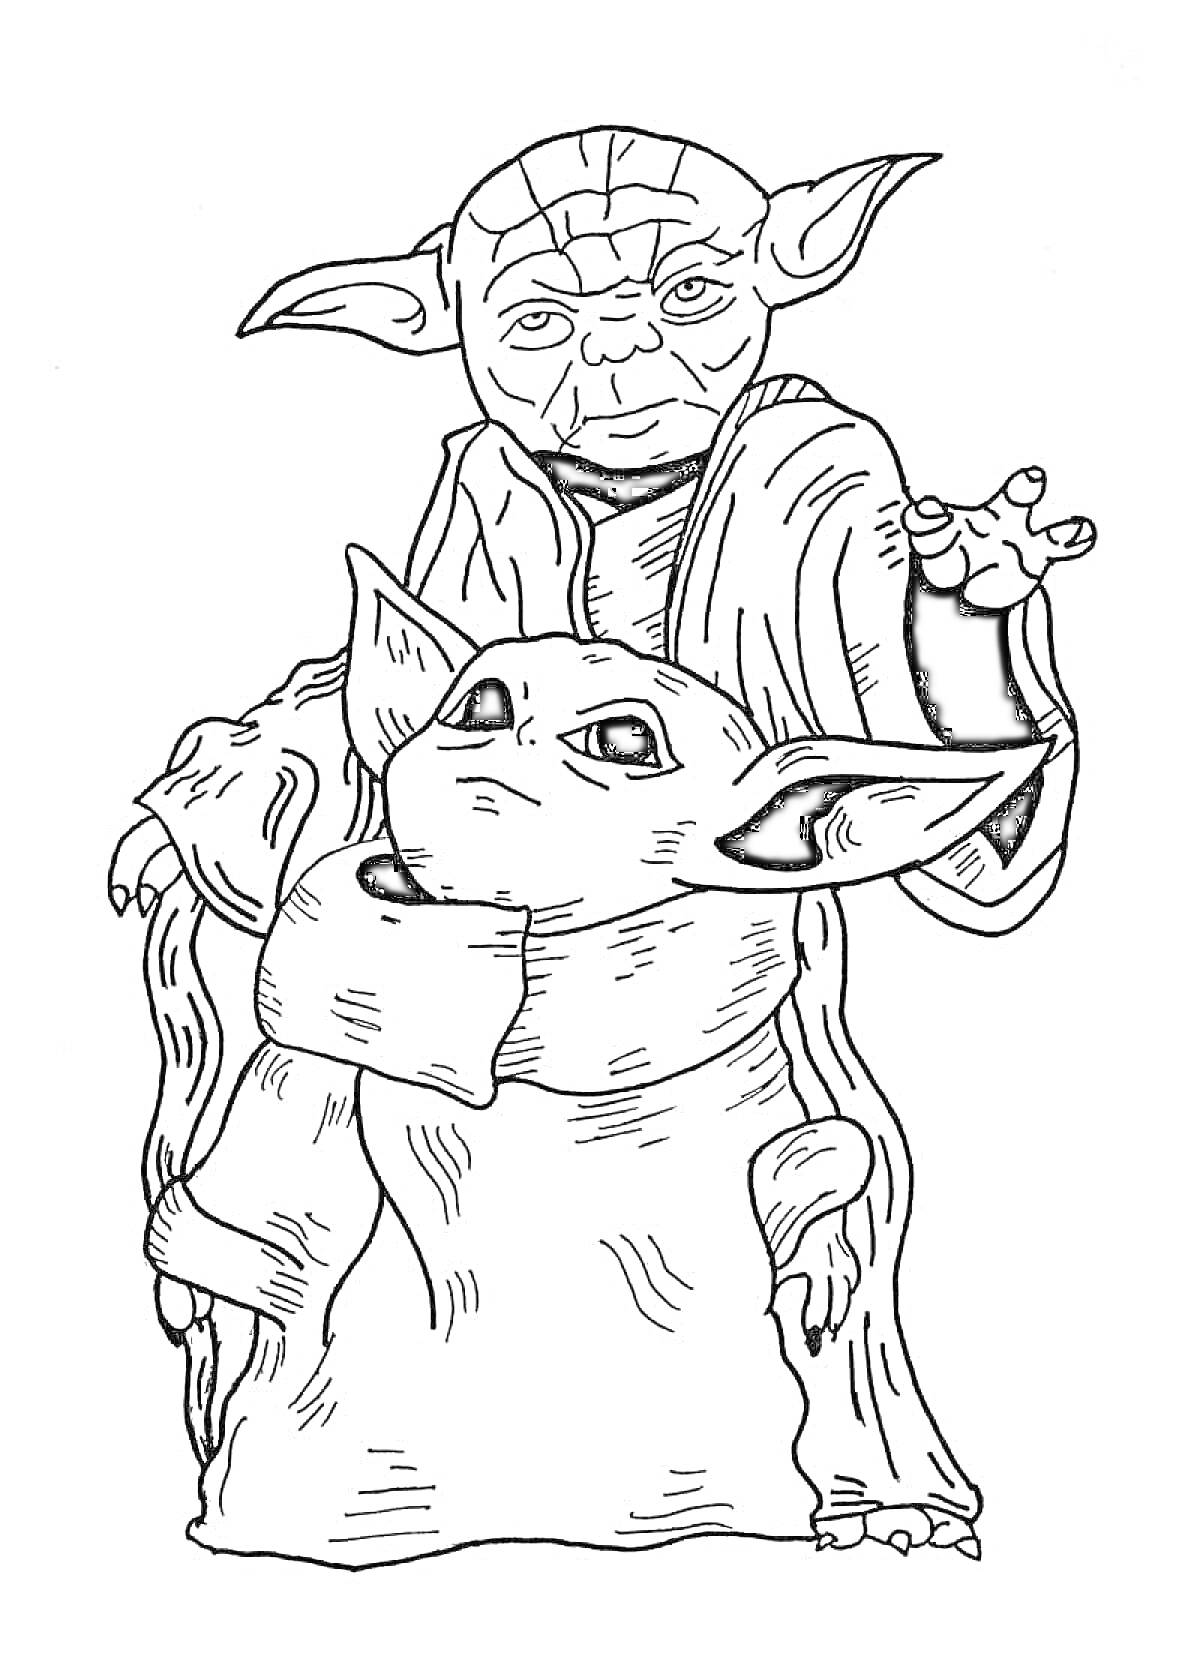 Йода и малыш Йода в Jedi одеяниях